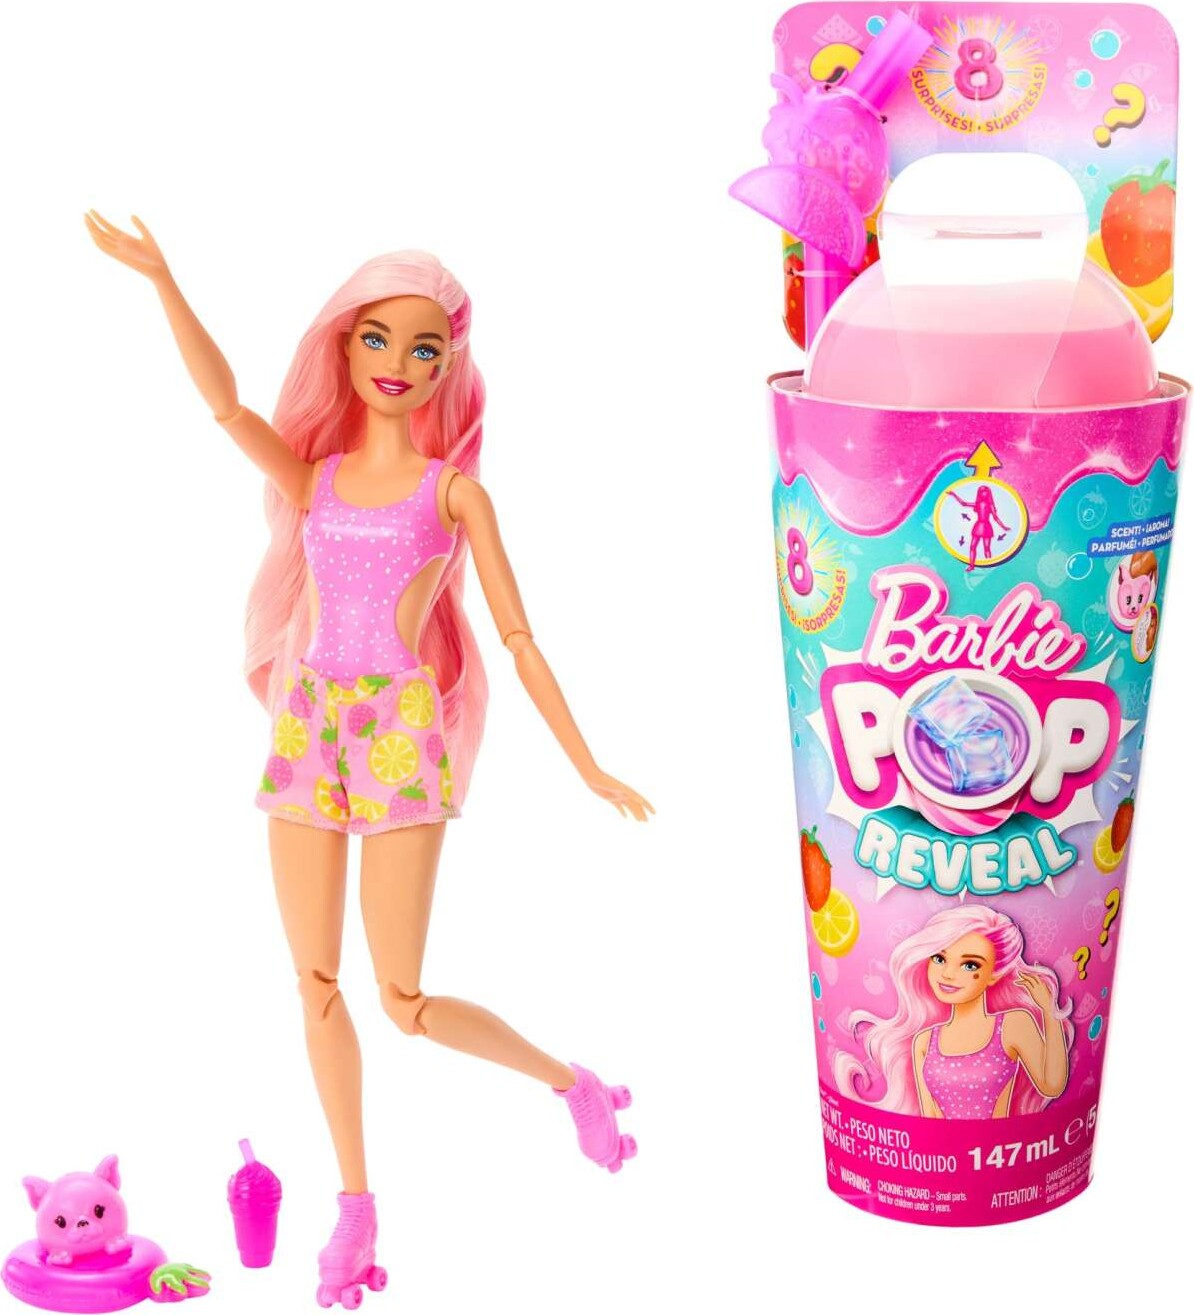 Billede af Barbie - Pop Reveal - Juicy Fruits - Strawberry Lemonade hos Gucca.dk